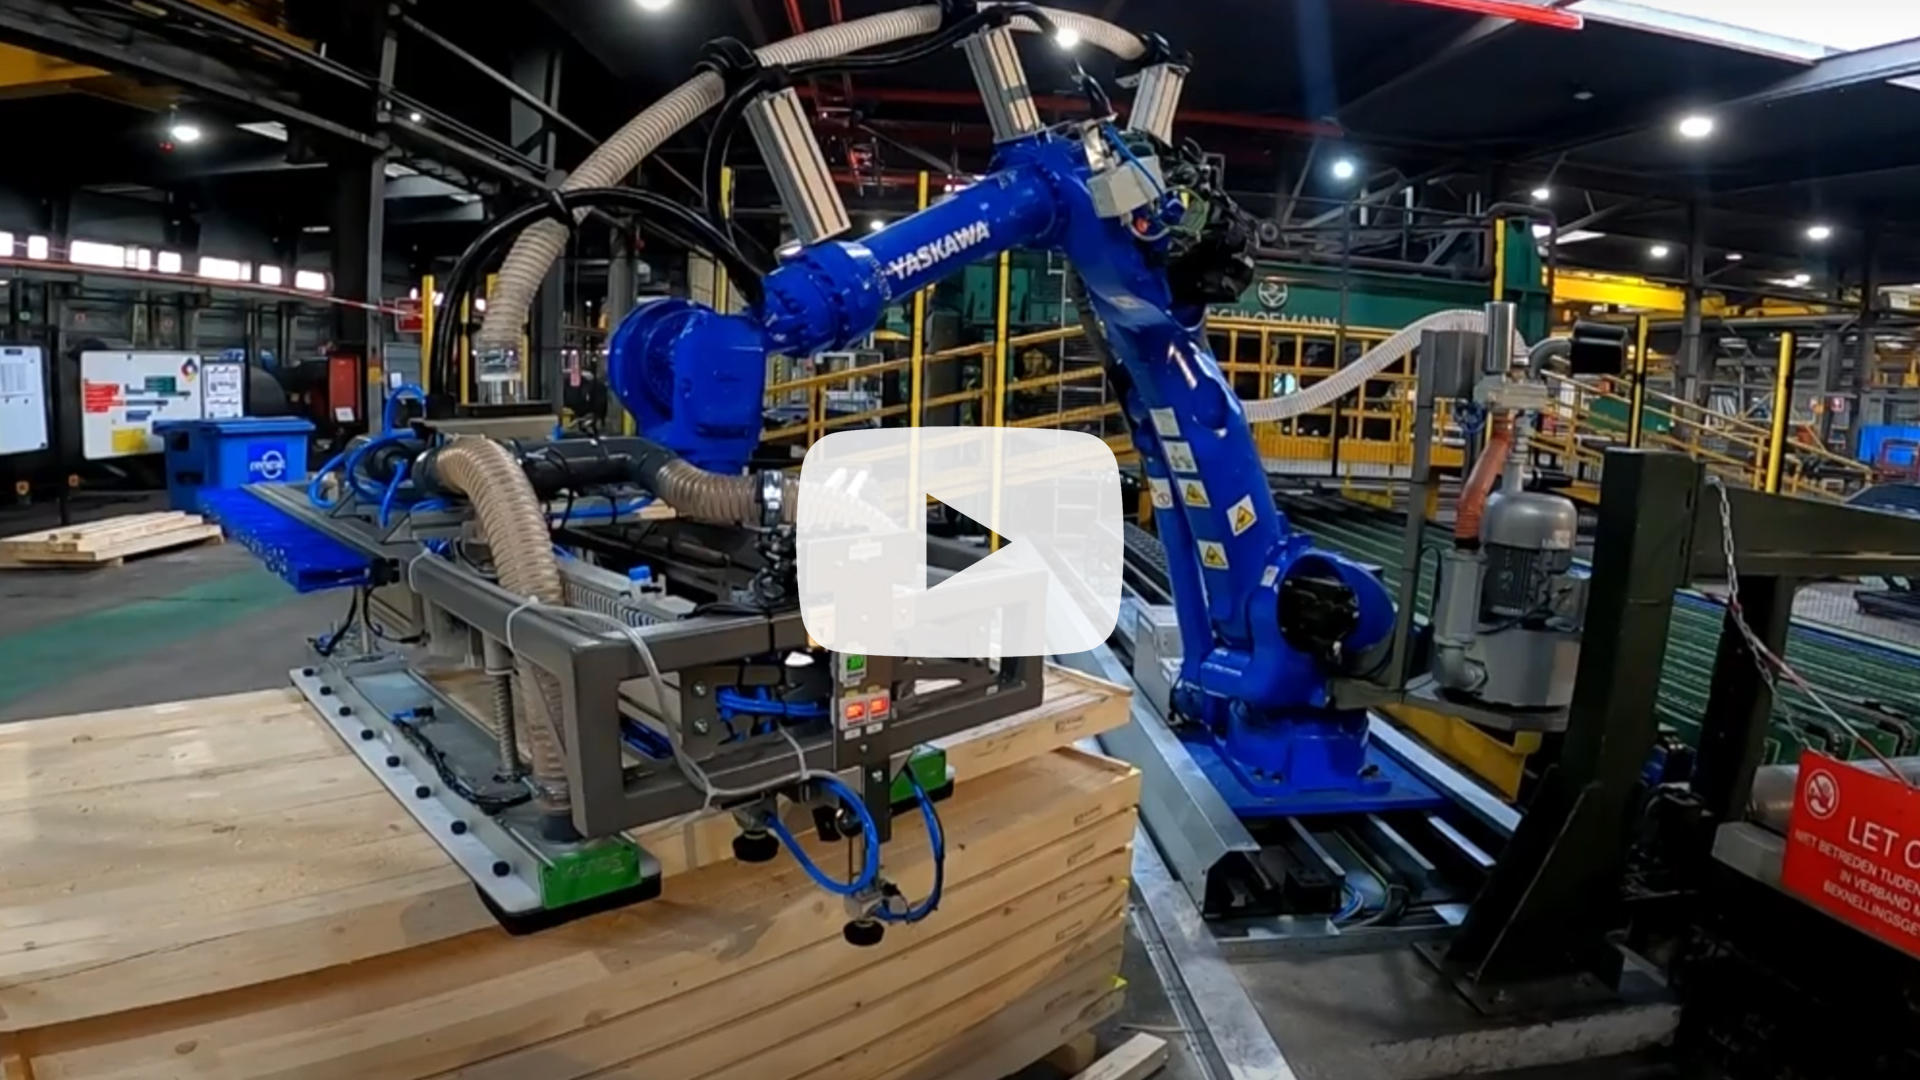 Op maat gemaakte robot cel voor Tata Steel. Flexibel en veel mogelijkheden als we uw robot op maat maken en aanpassingen doorvoeren. Lees de voordelen.